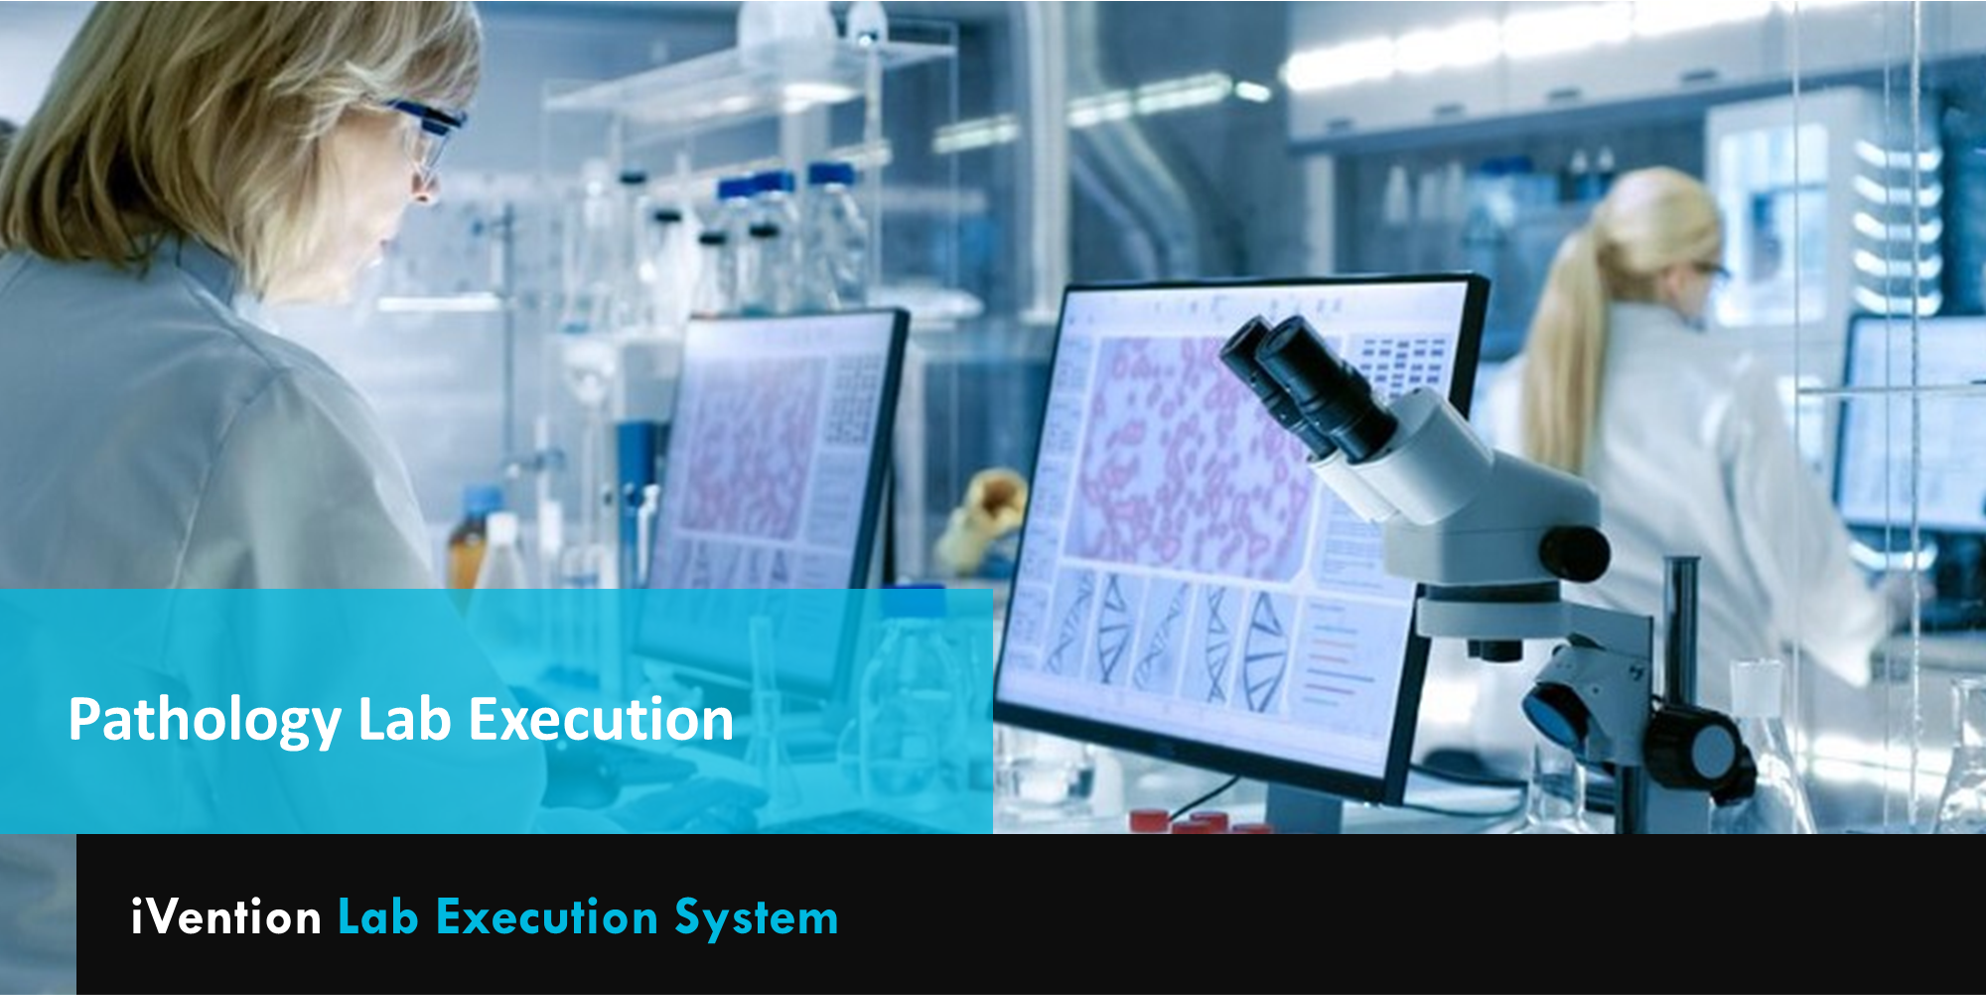 iLES - Pathology Lab Execution